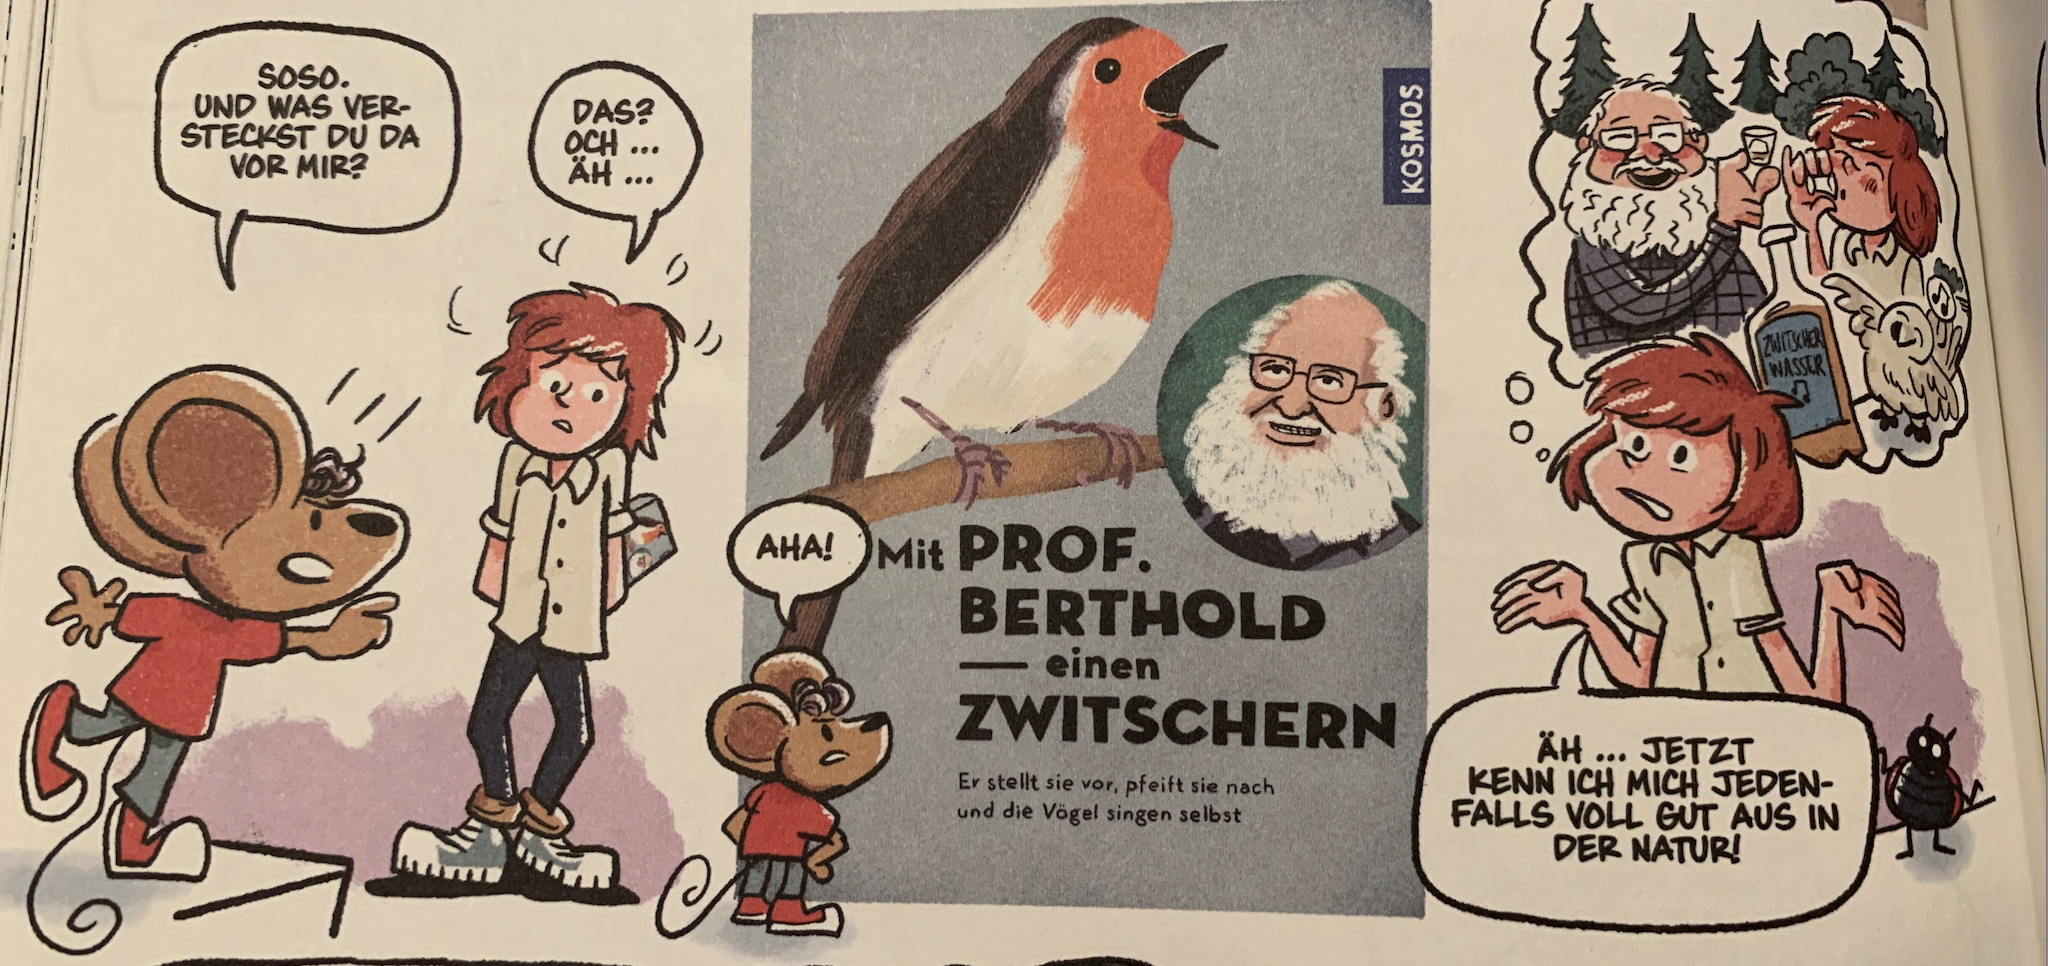 Abbildung 2: Einen Zwitschern mit Professor Berthold.